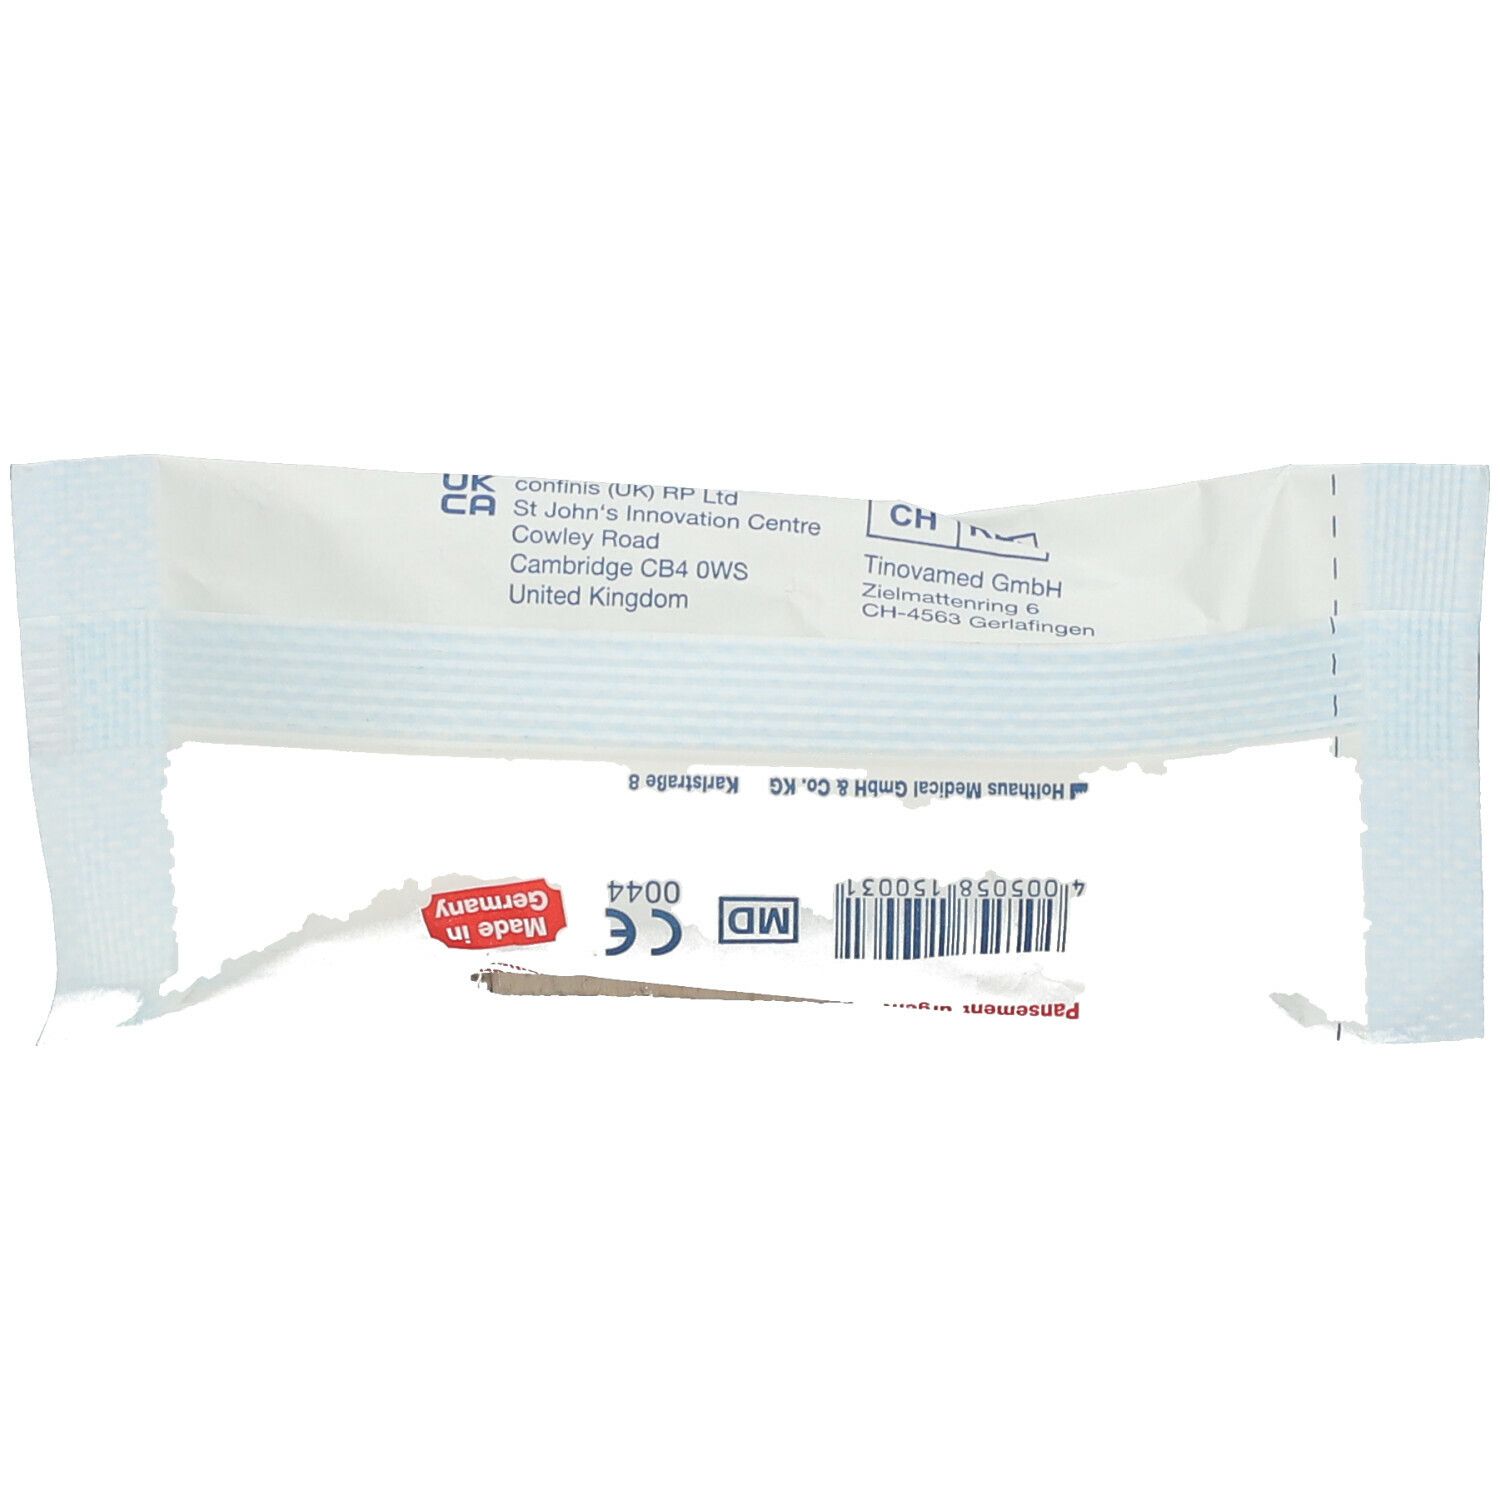 Verbandpäckchen YPSISAVE® - steril verpackt - in versch. Größen erhäl, 0,34  EUR